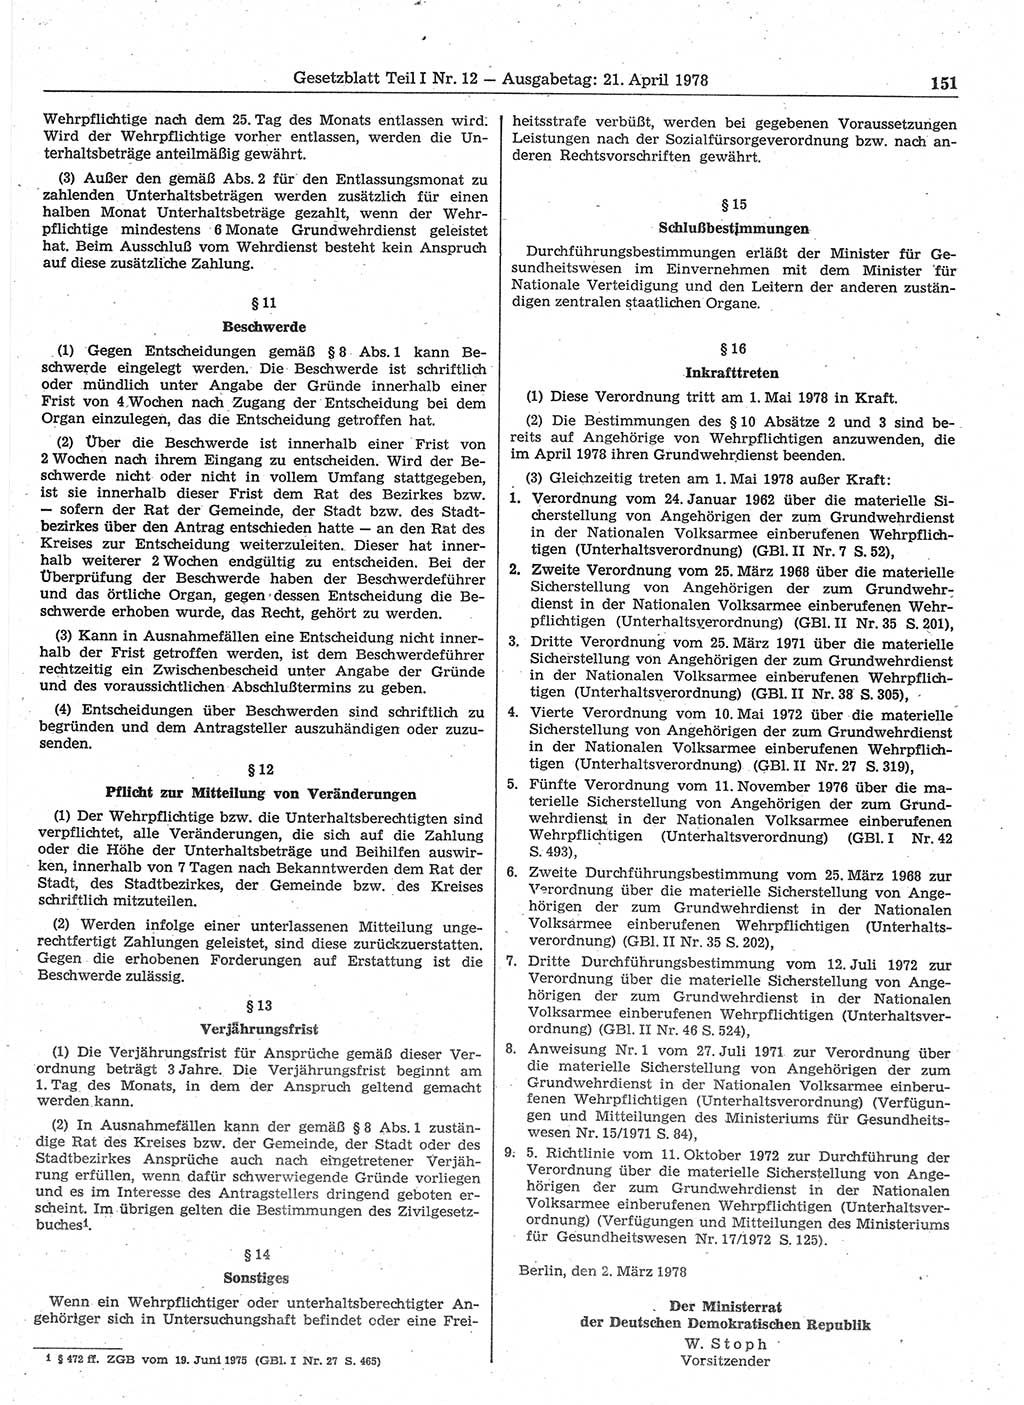 Gesetzblatt (GBl.) der Deutschen Demokratischen Republik (DDR) Teil Ⅰ 1978, Seite 151 (GBl. DDR Ⅰ 1978, S. 151)